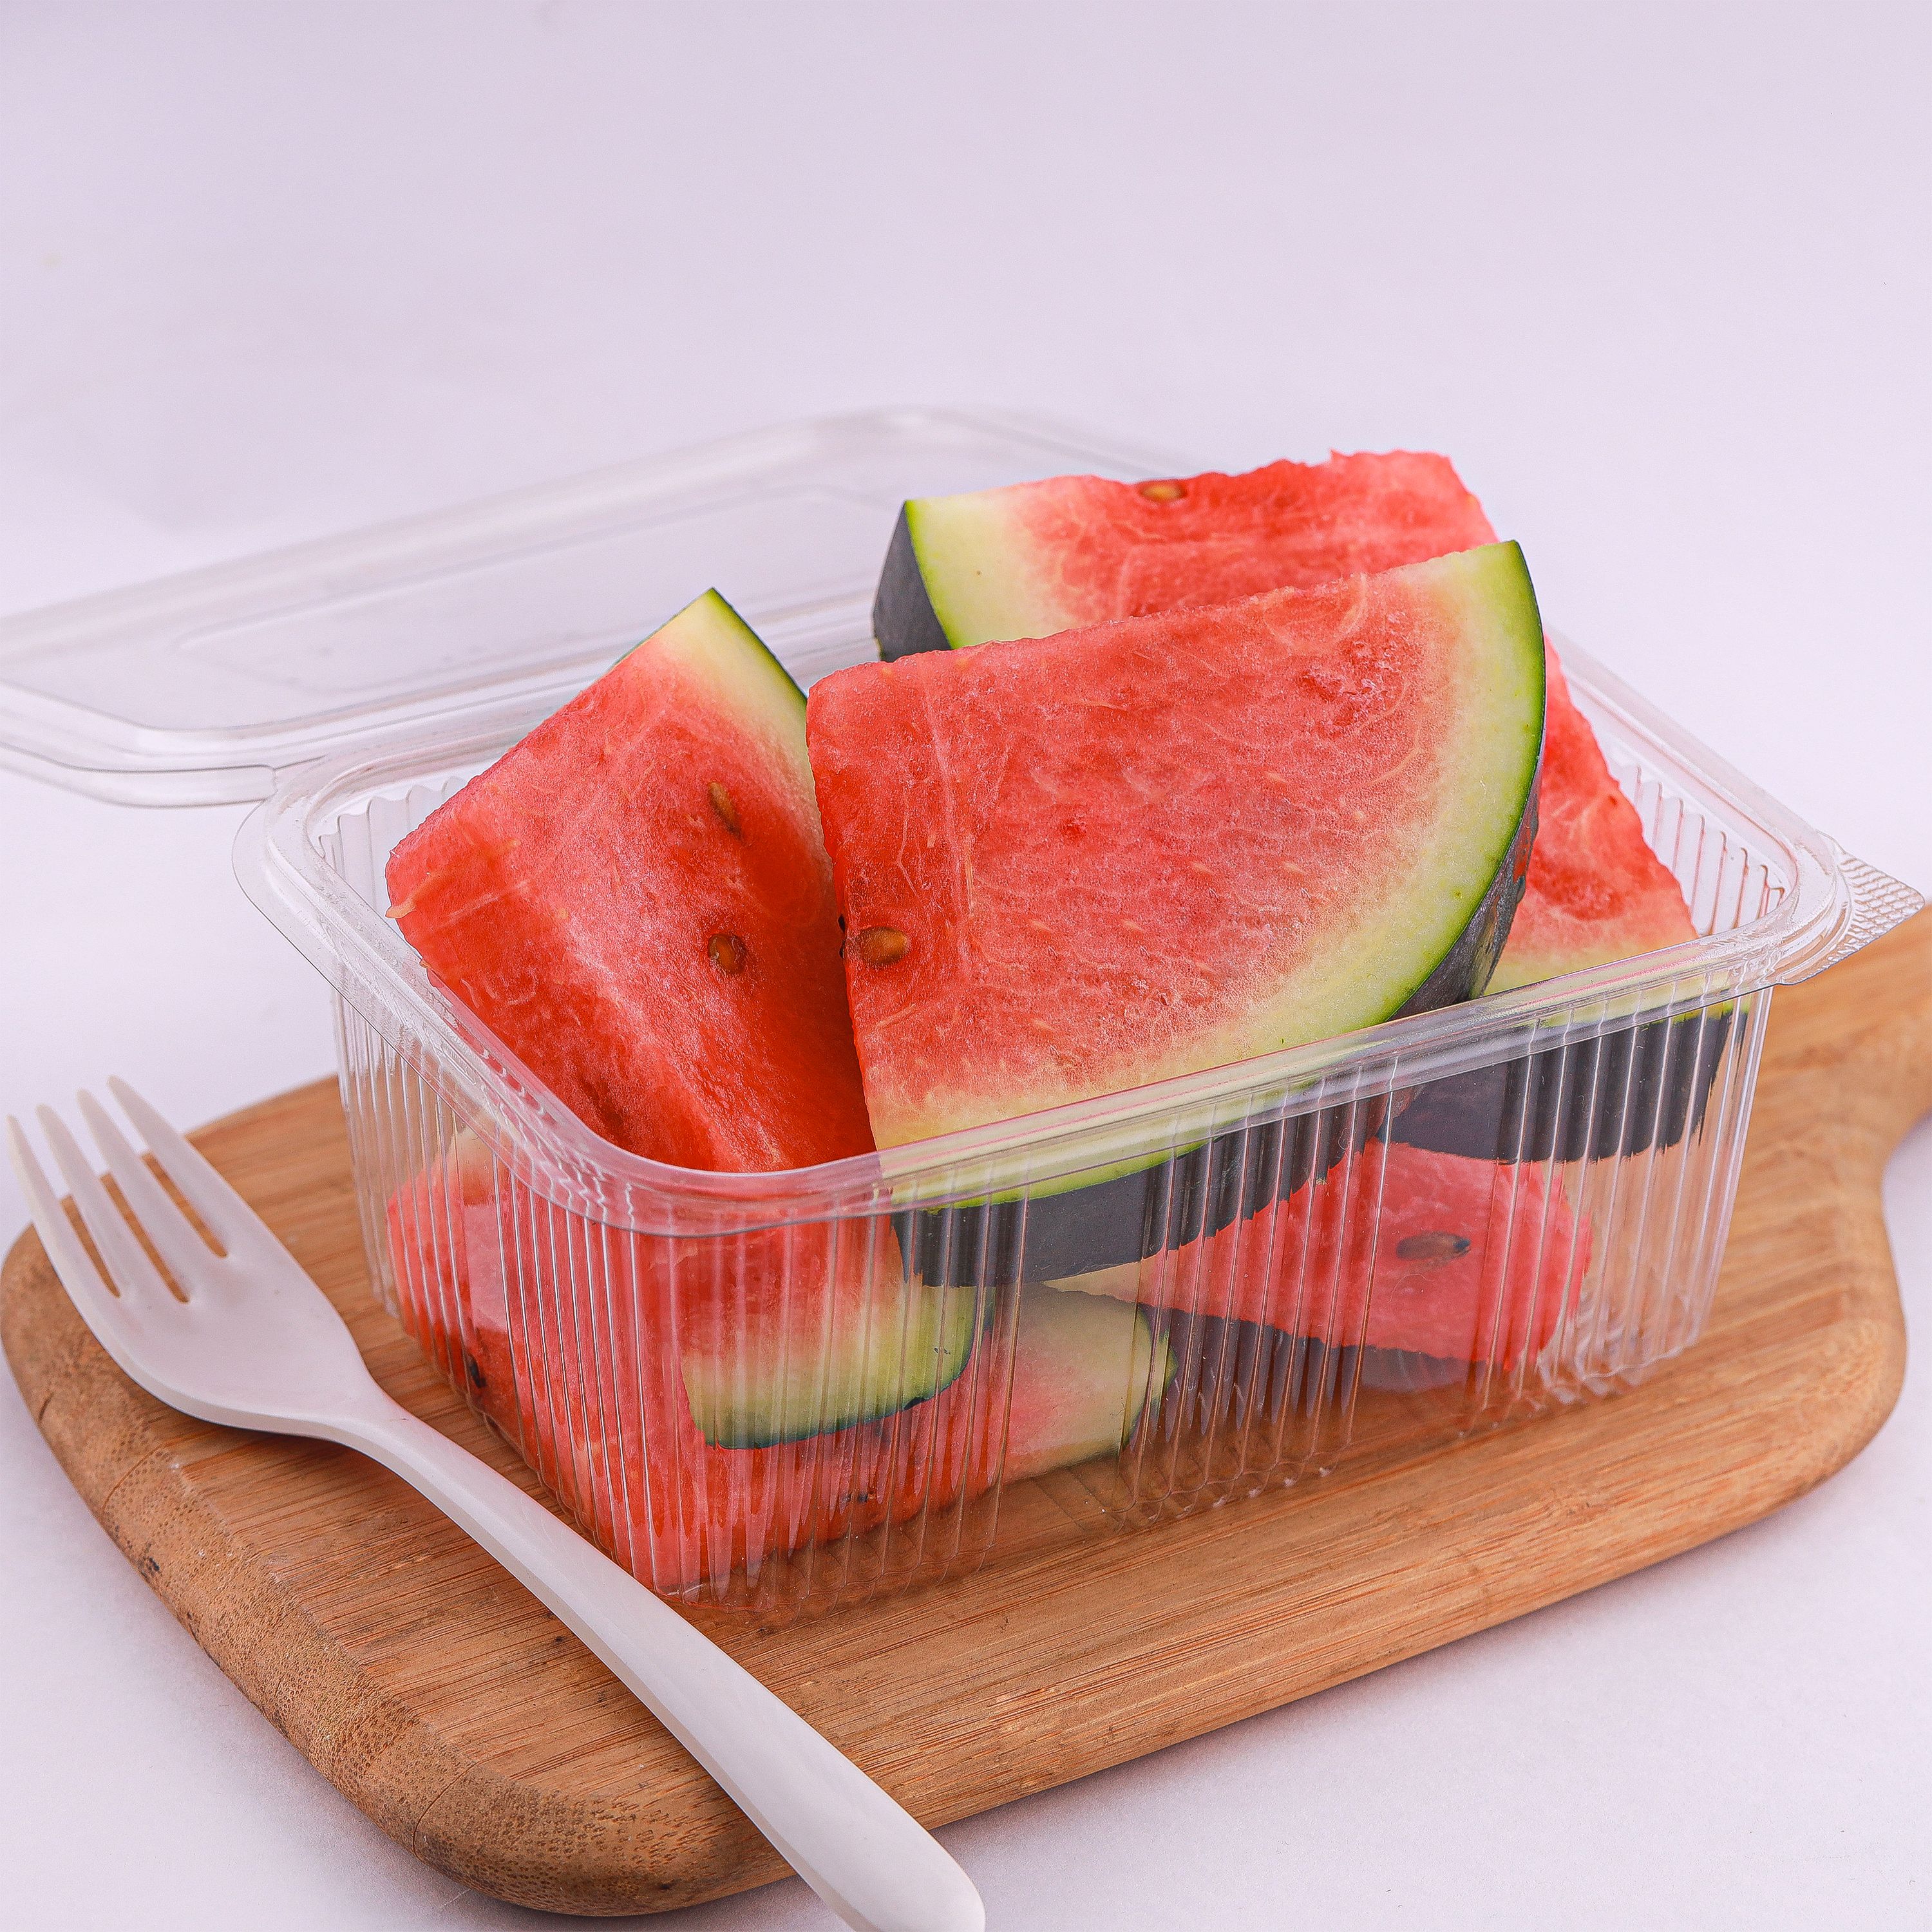 watermelon_chunks.jpg